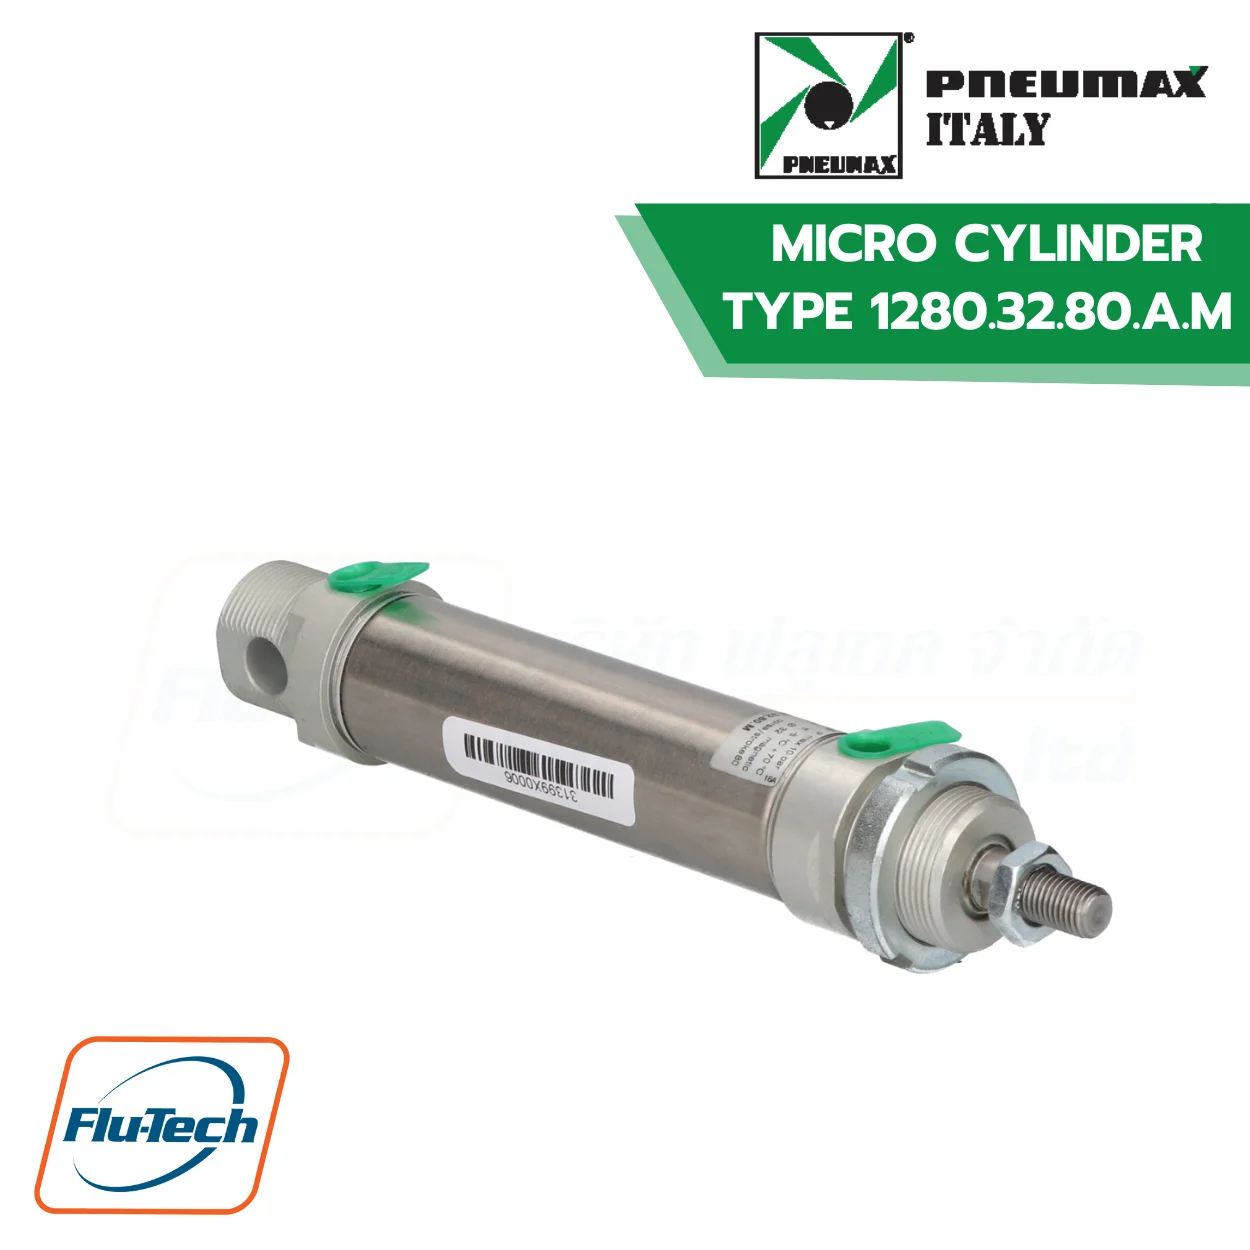 กระบอกลมสแตนเลส (Stainless Steel Pneumatic Cylinder) PNEUMAX ITALY - MICRO CYLINDER TYPE 1280